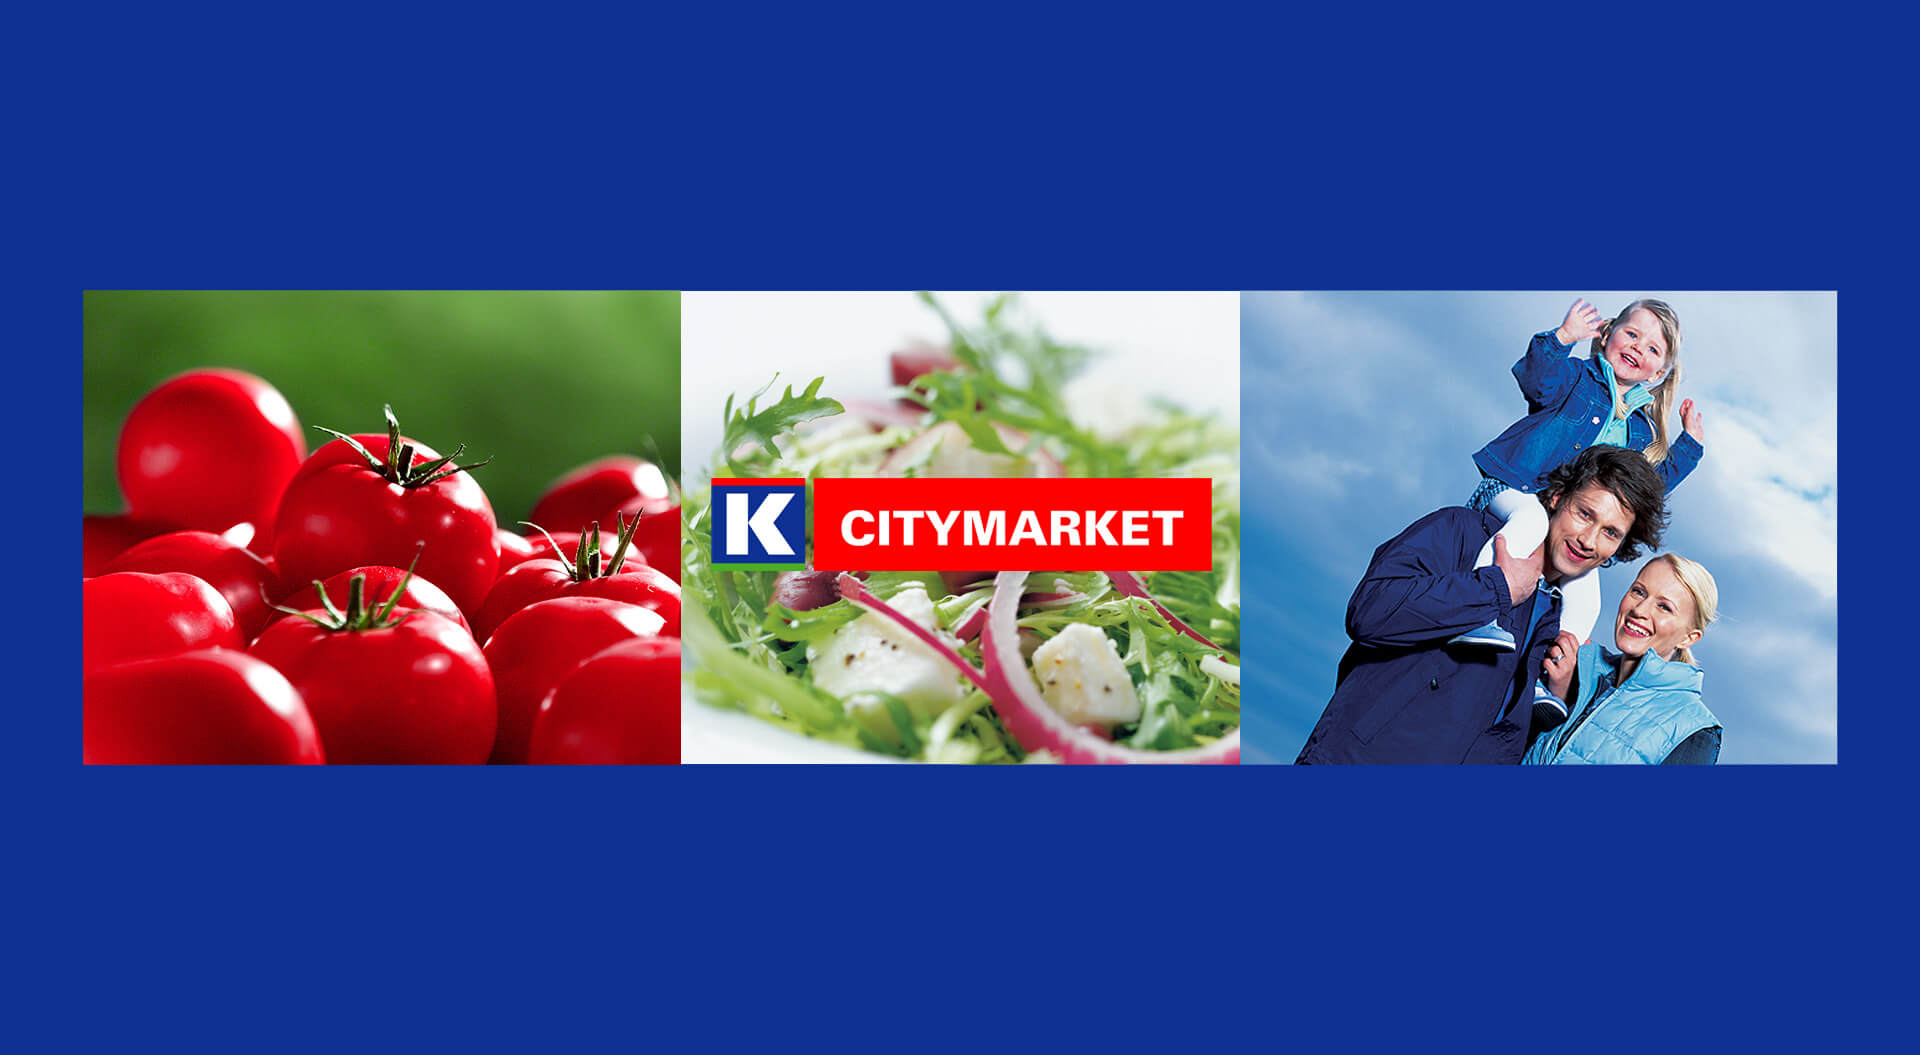 Kesko K CityMarket  Finland, reinvents hypermarket  branding